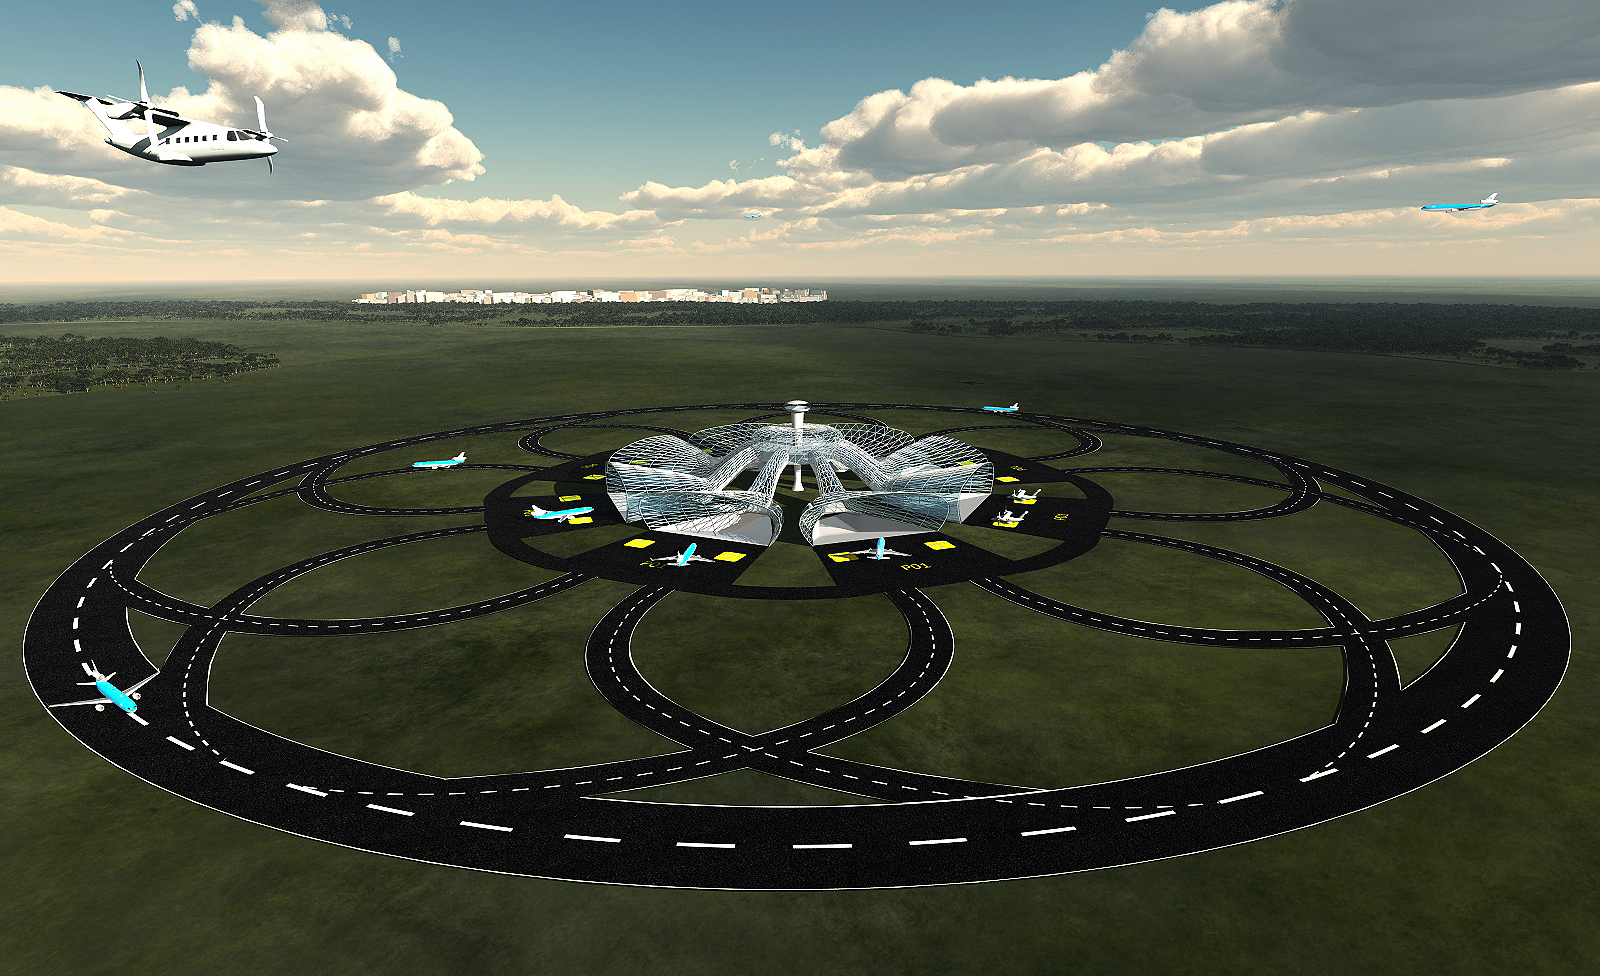 Circular runway